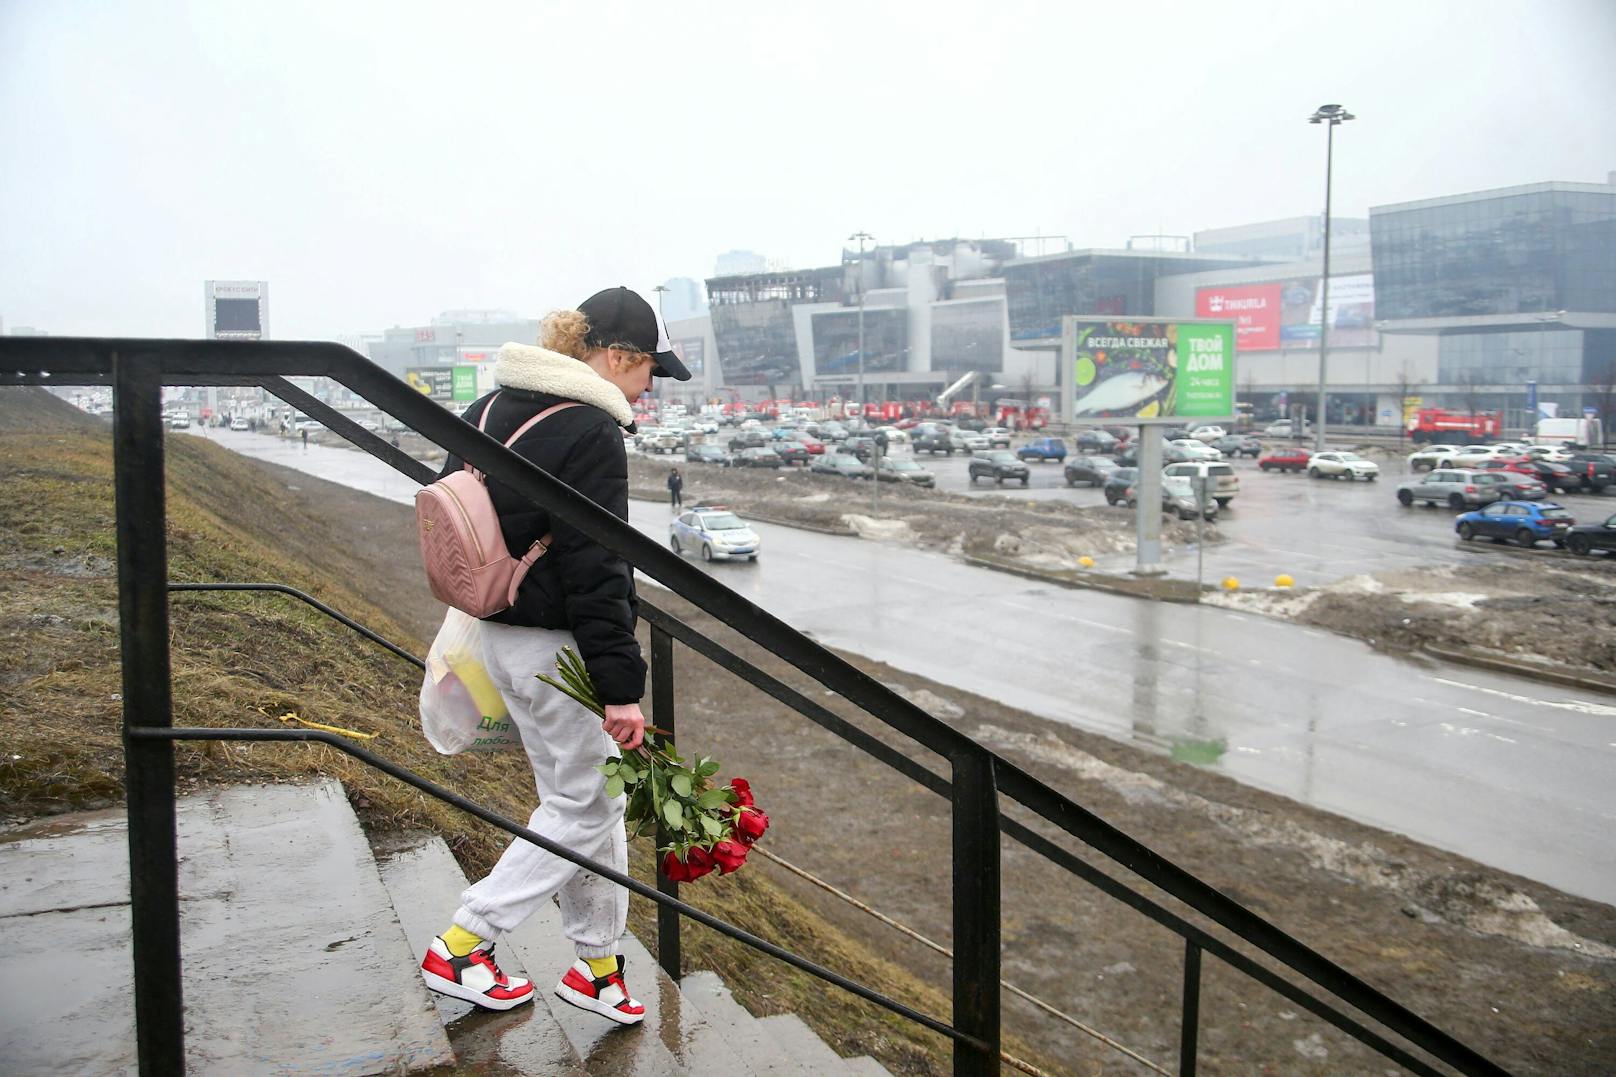 Rund einhundert Menschen starben bei dem Angriff auf die Konzerthalle. Am Tag werden am Anschlagsort Blumen niedergelegt.